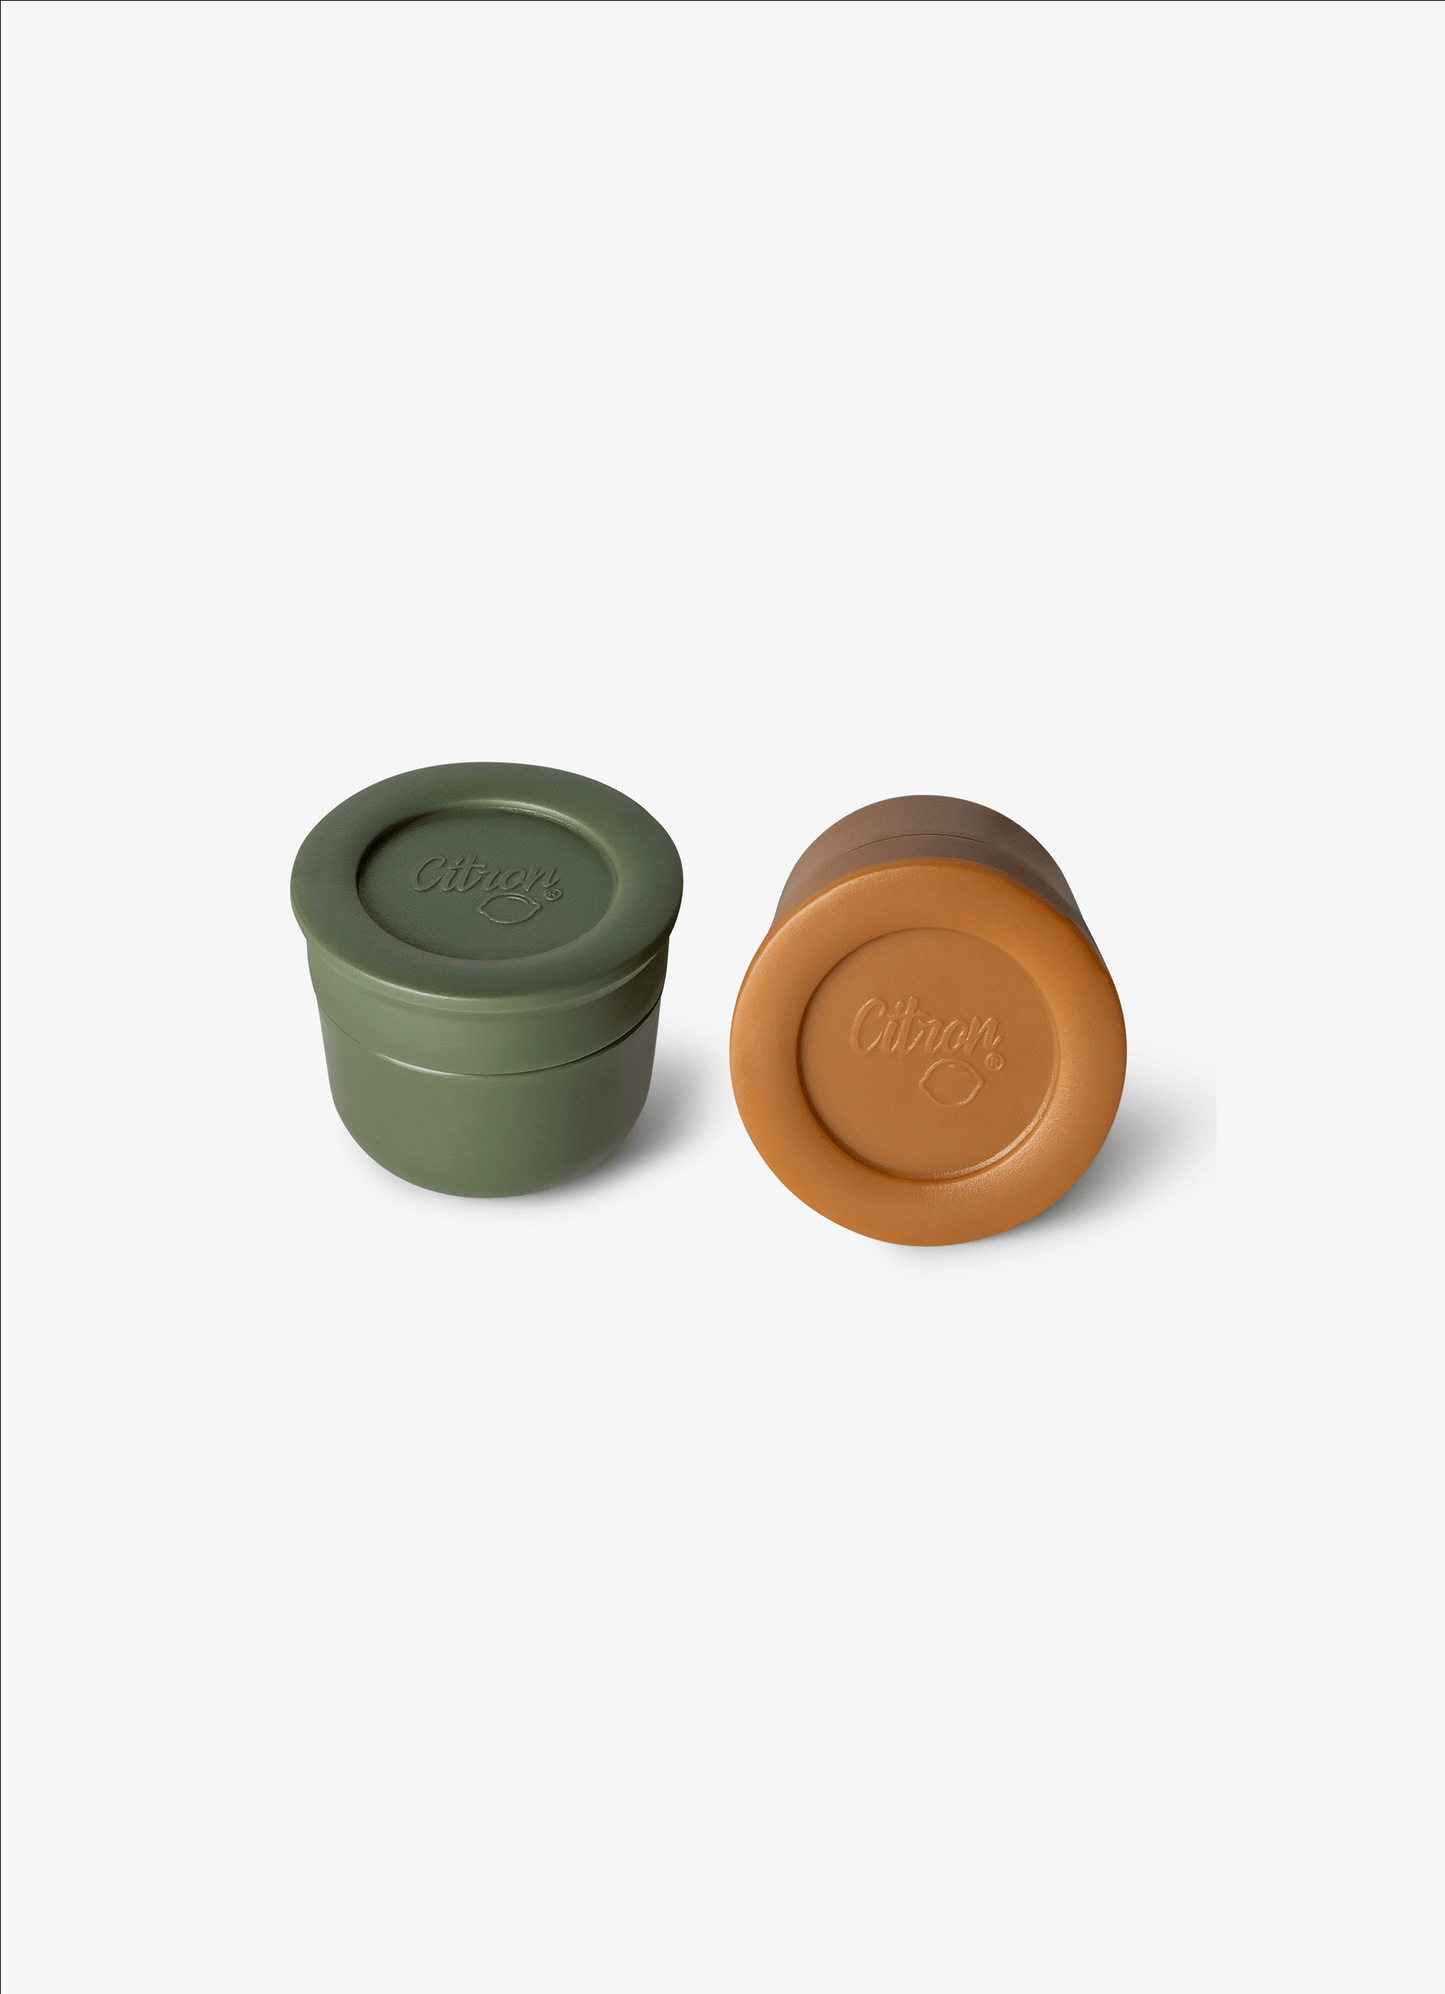 Saucers - Set of 2 - Caramel/Green